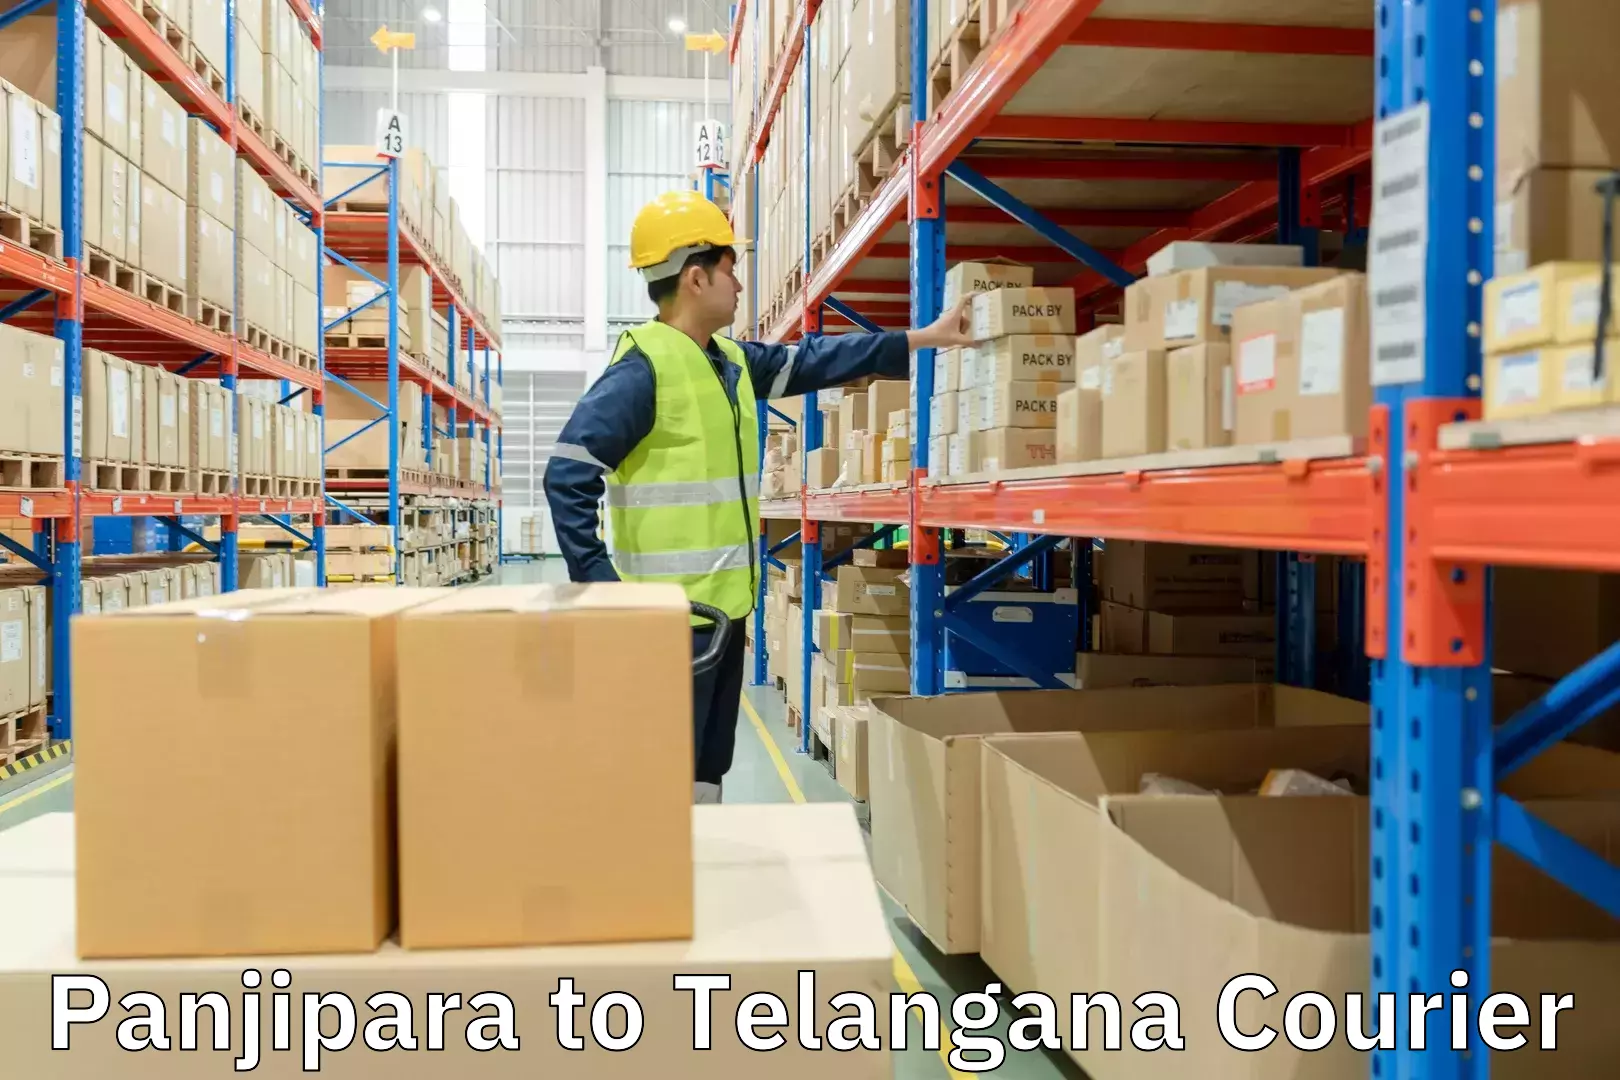 Express delivery network Panjipara to Telangana